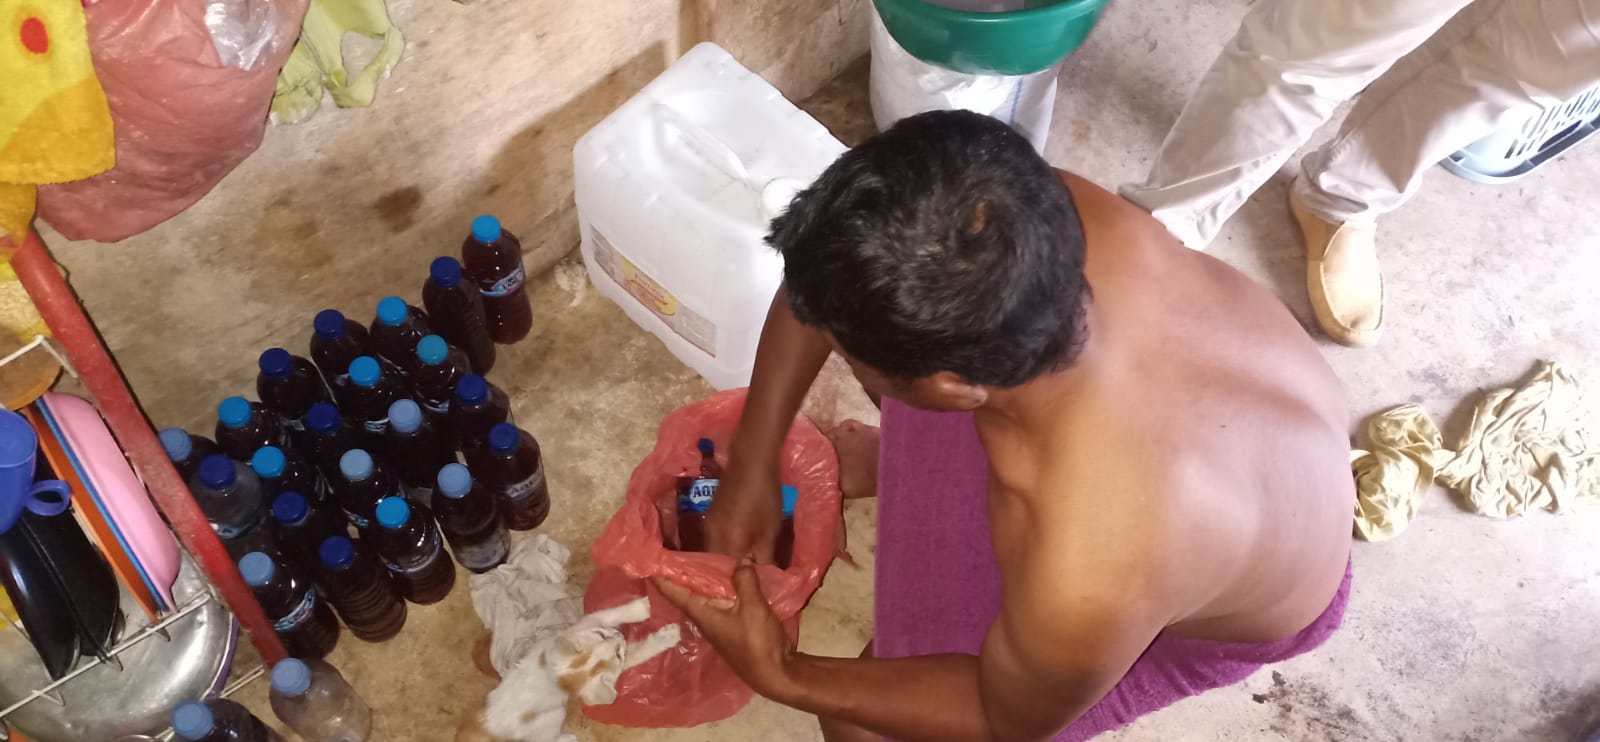 Puluhan Botol Arak Diamankan dari Penjual di Lepong